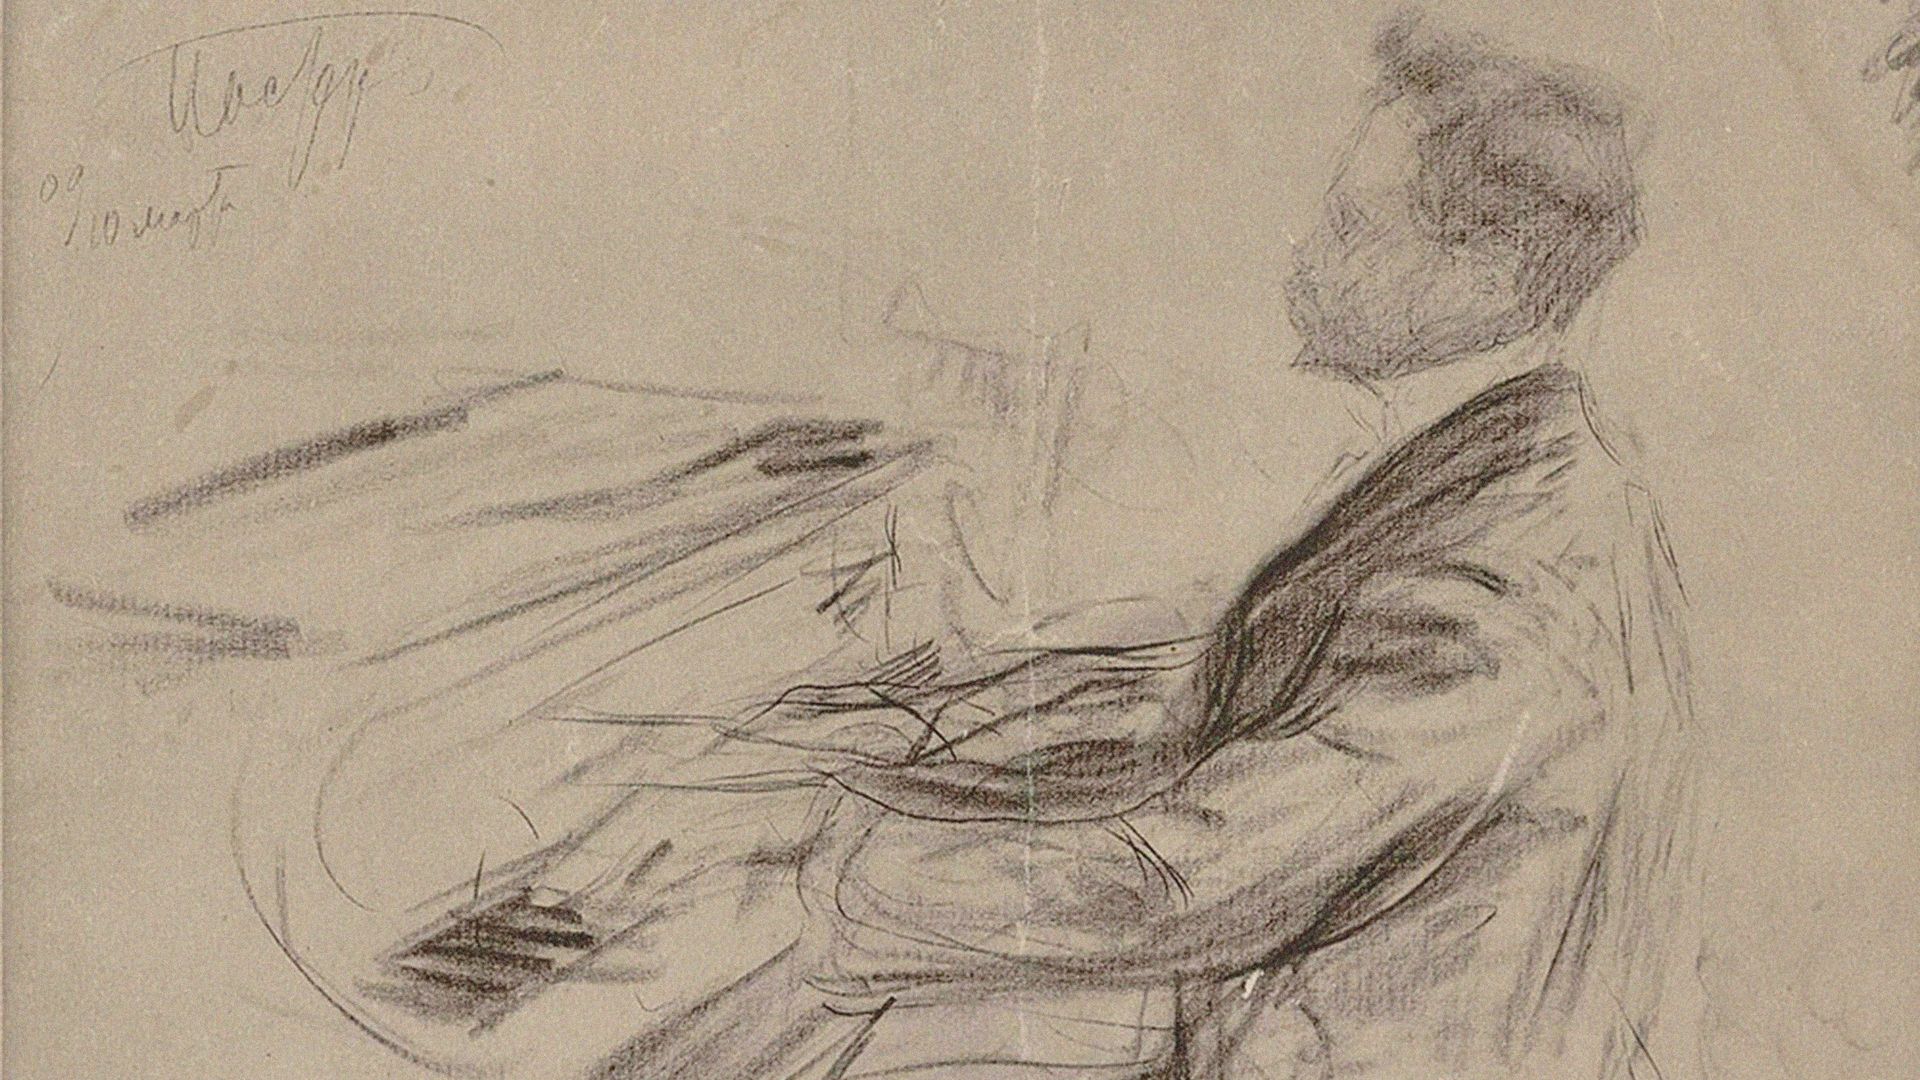 Alexandre Scriabine (1872-1915) au piano à queue, 1909. Trouvé dans la collection de la Bibliothèque nationale russe, Saint-Pétersbourg.